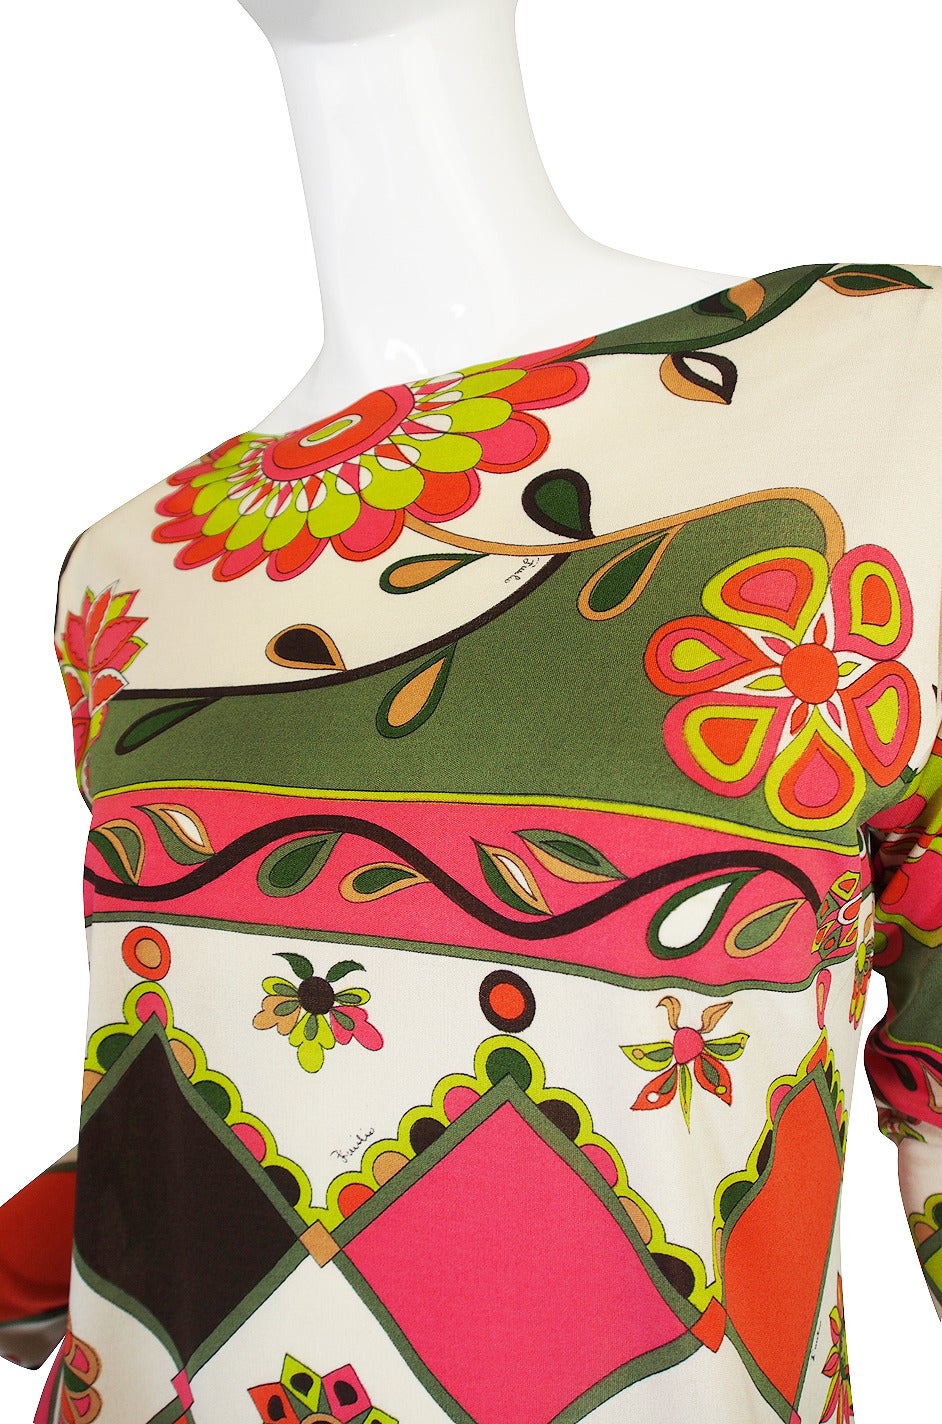 1960s Geometric & Floral Emilio Pucci Shift Dress For Sale 2